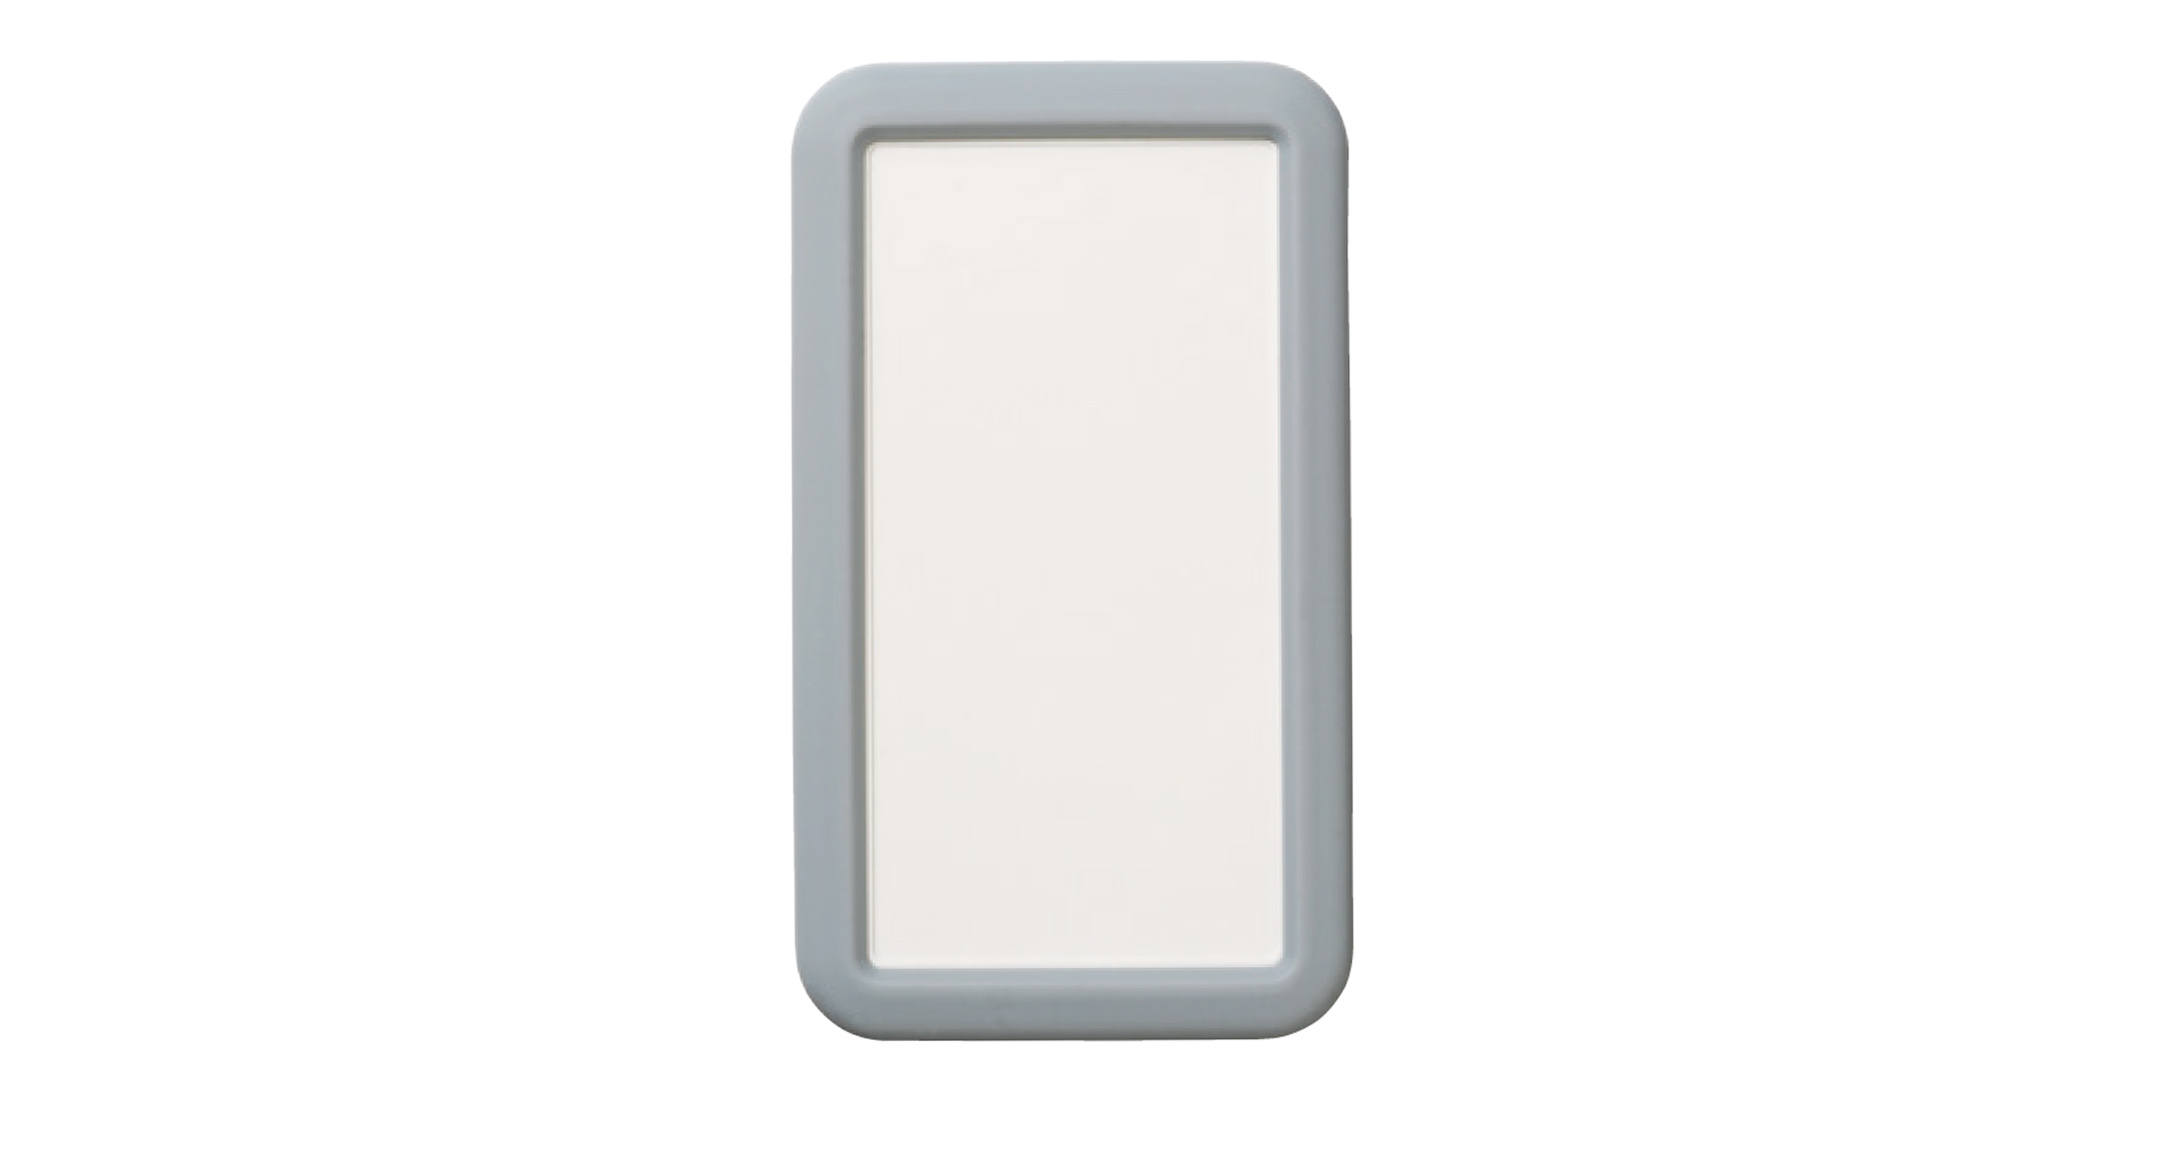 シリコンカバー付プラスチックケース LCSシリーズ:オフホワイト/ライトグレーの画像